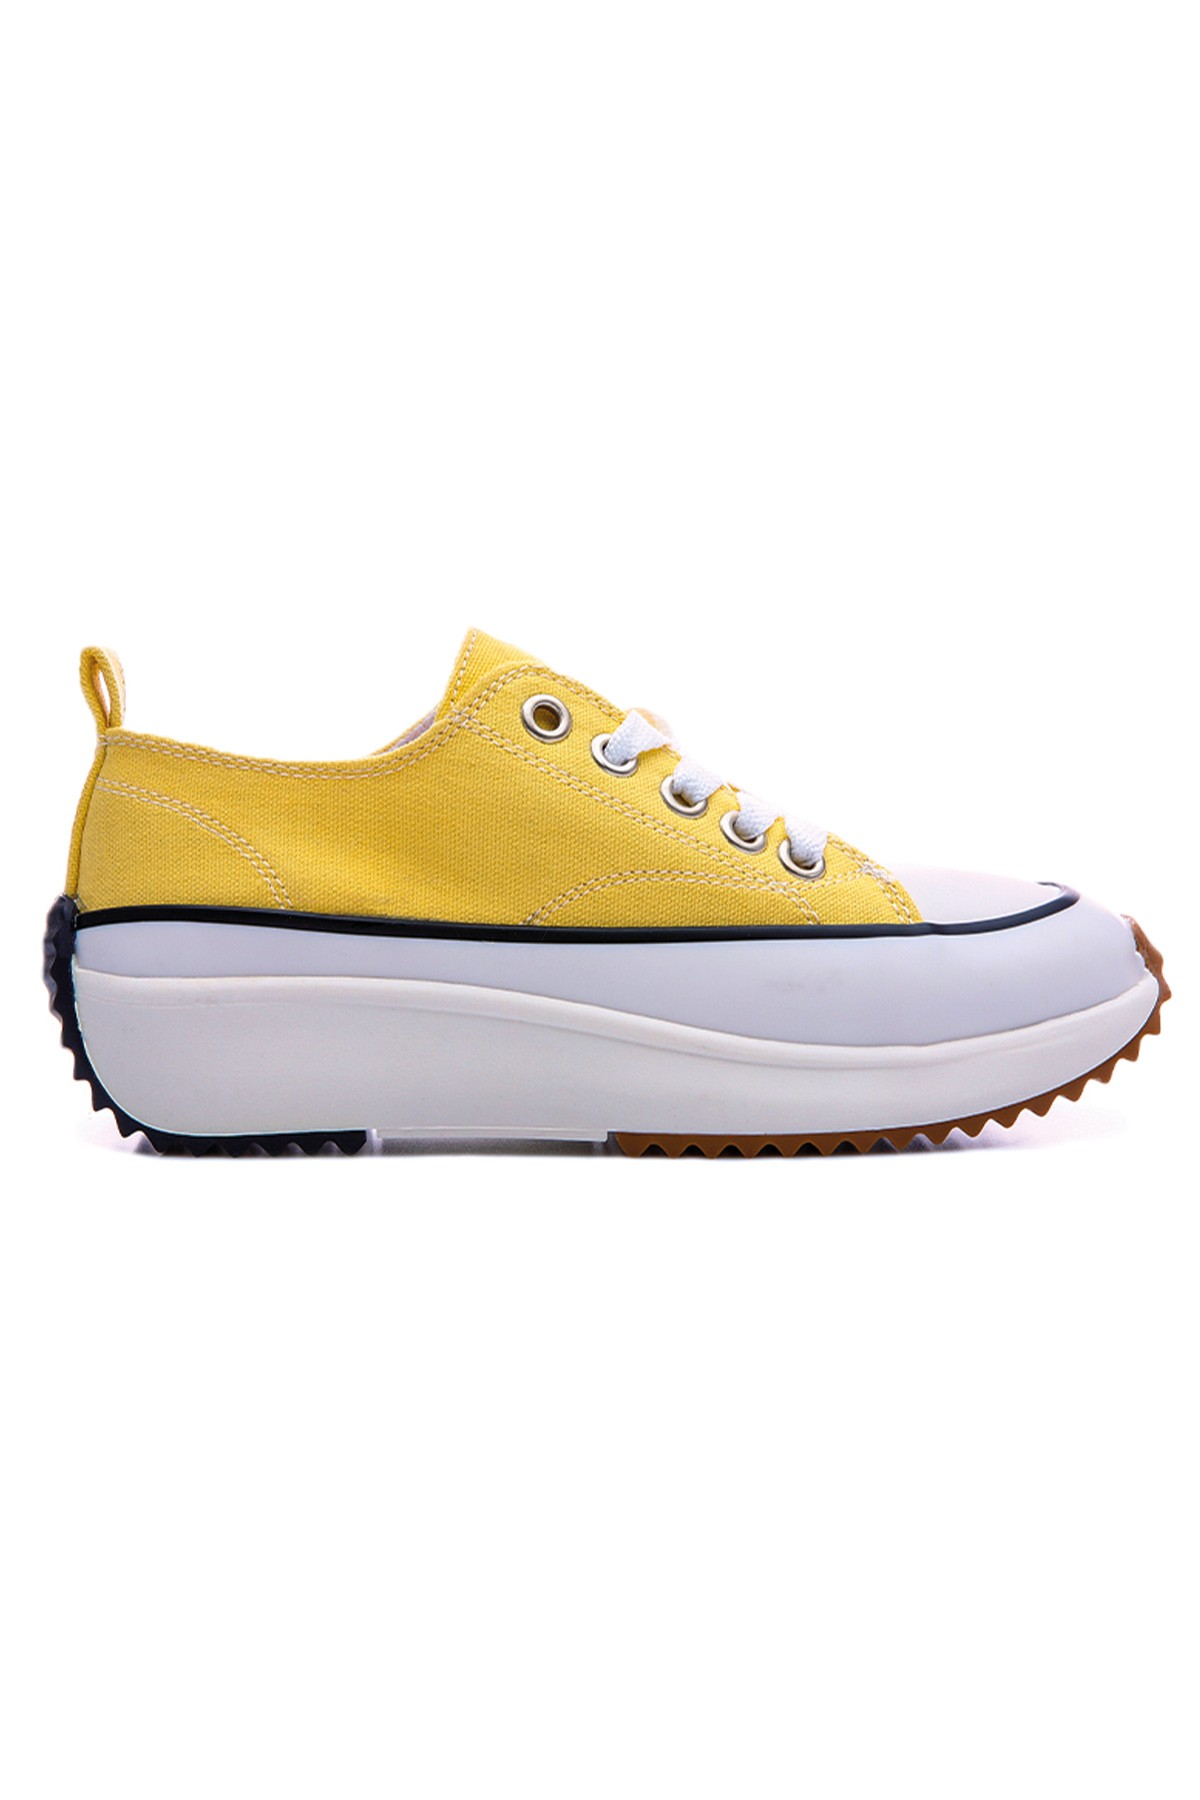 TommyLife - Sarı Bağcıklı Yüksek Taban Günlük Kadın Spor Ayakkabı - 89070